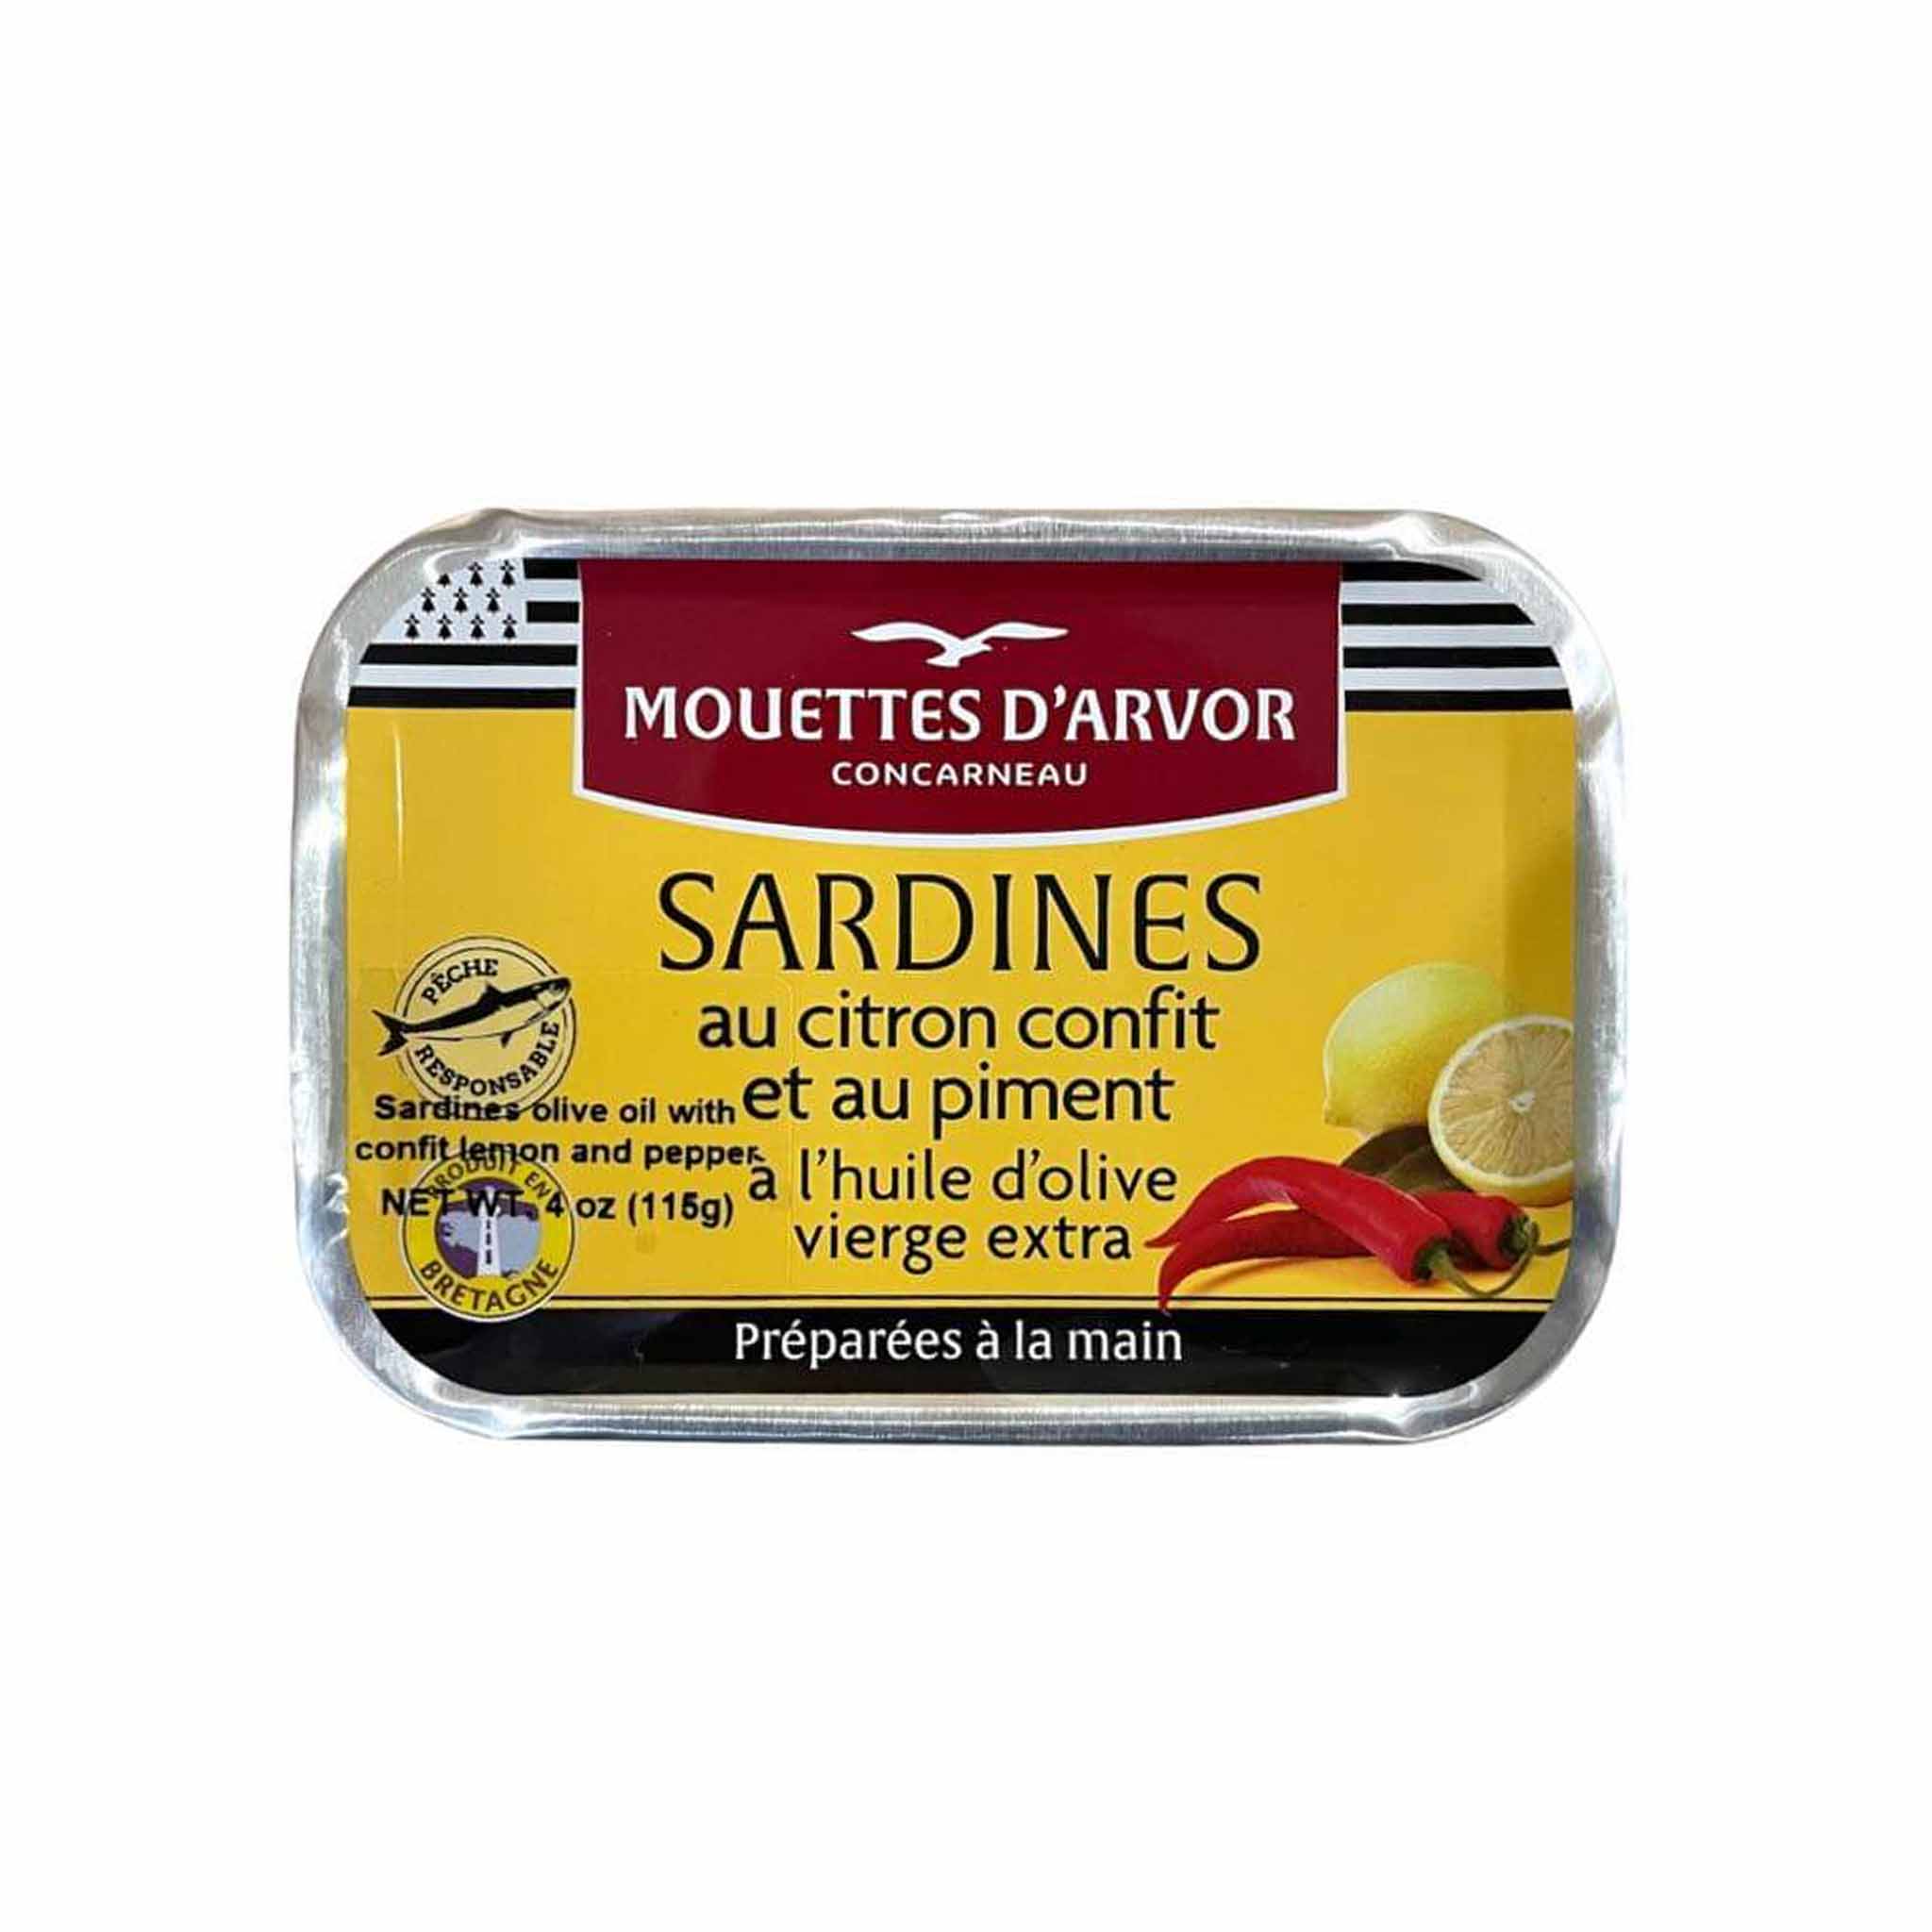 Les Mouettes d'Arvor Sardines Lemon Piment